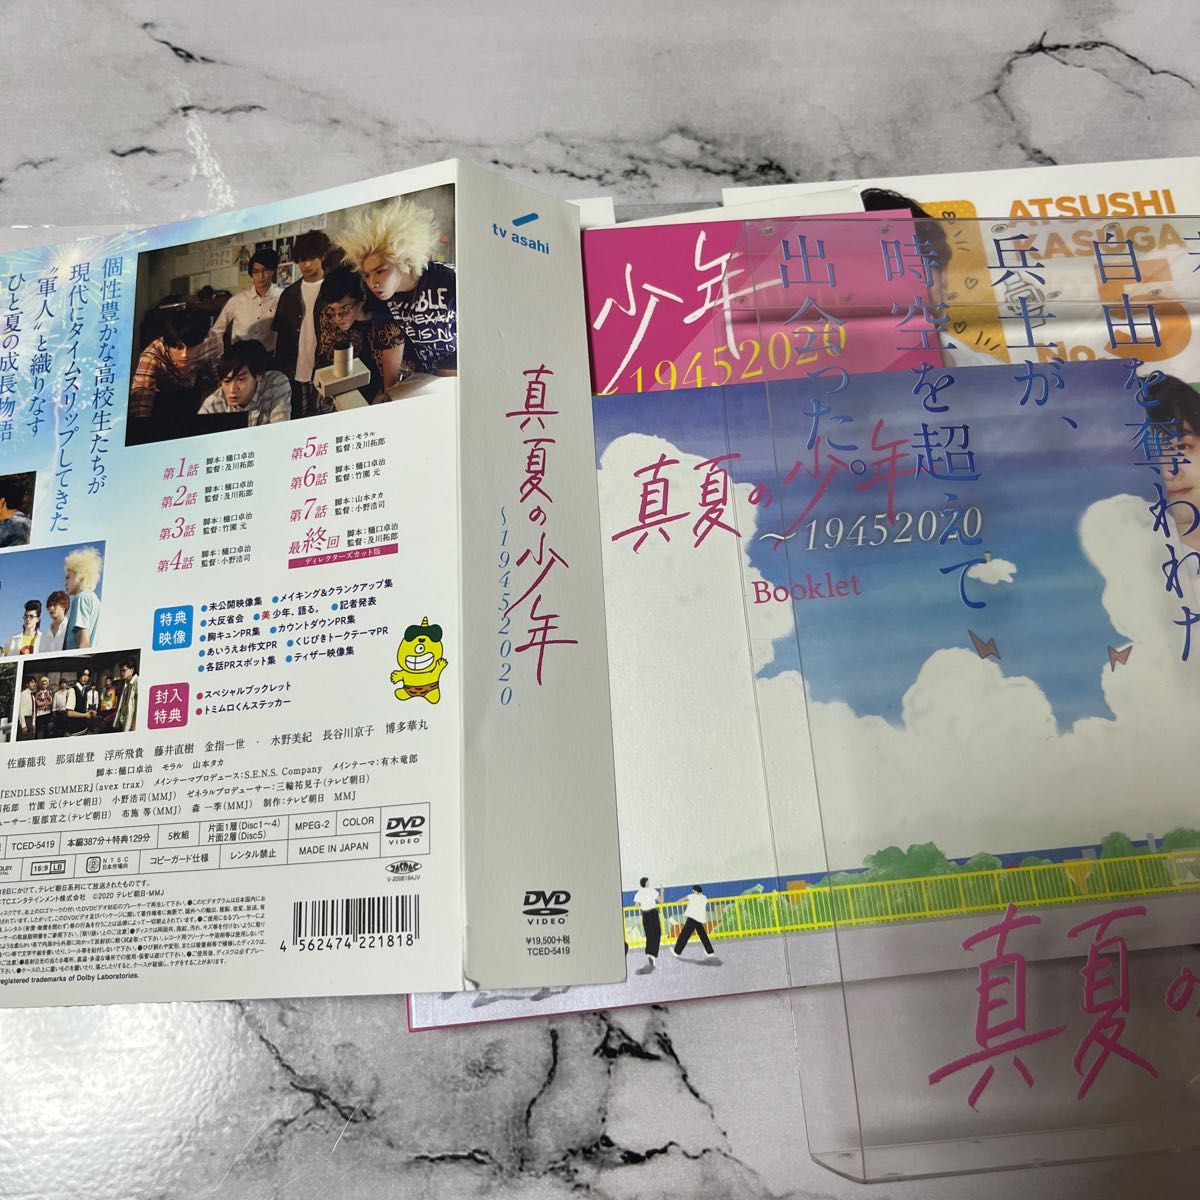 真夏の少年 美少年 DVD BOX 特典付き 最安値